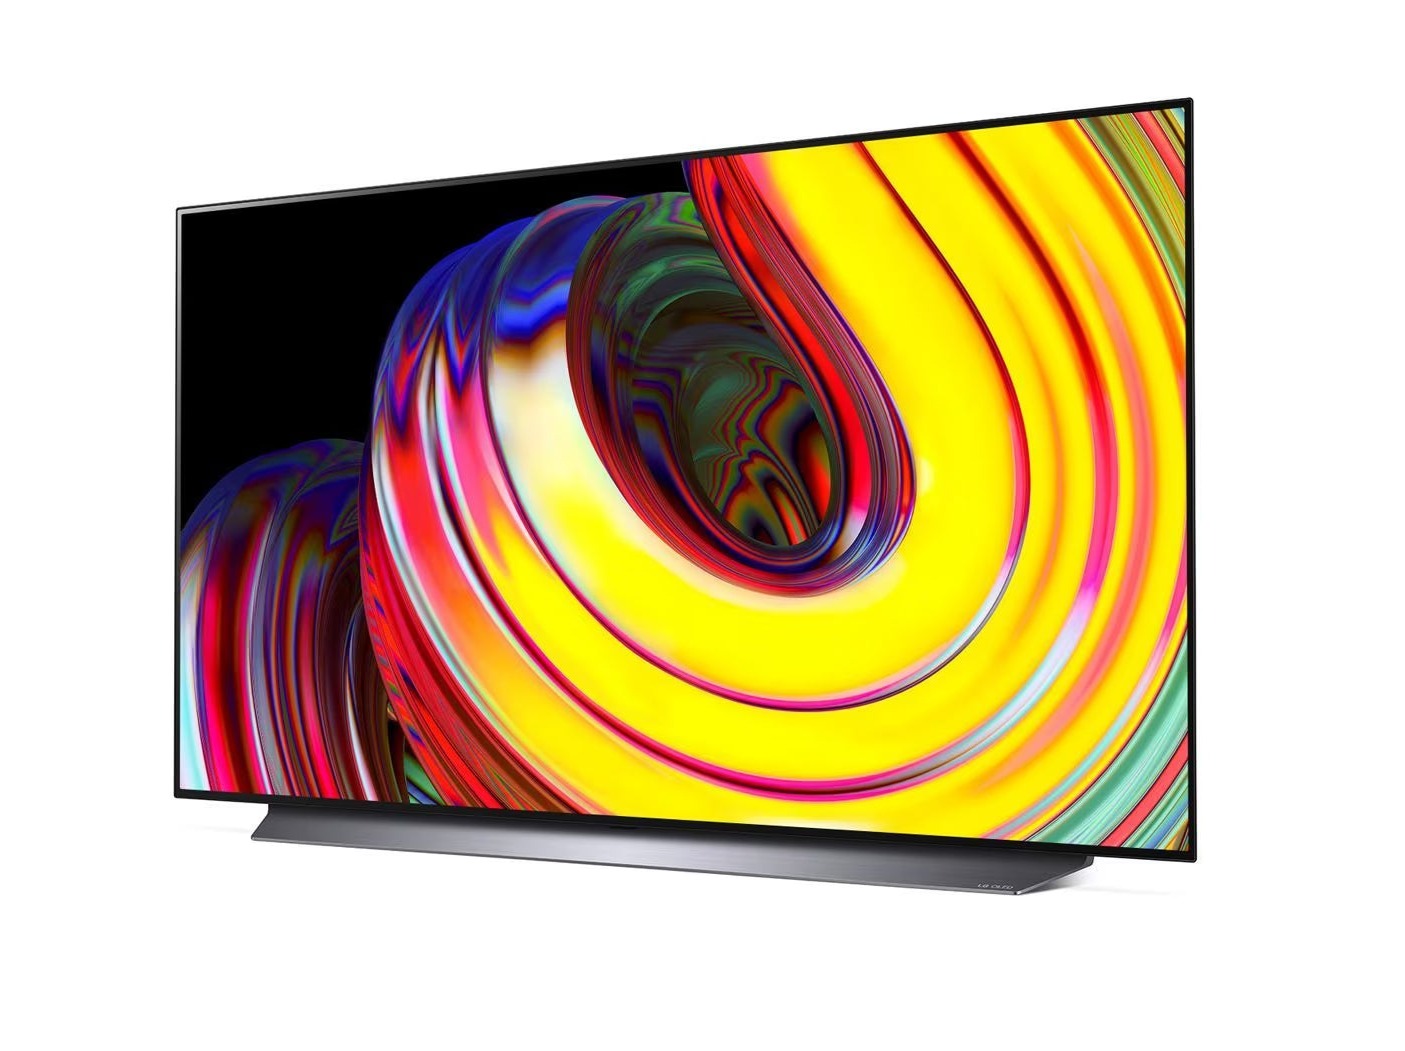 LG 77CS oled televízió talpon, enyhén balra fodítva lilás sárga árnyalatú absztrakt ábra a kijelzőn.